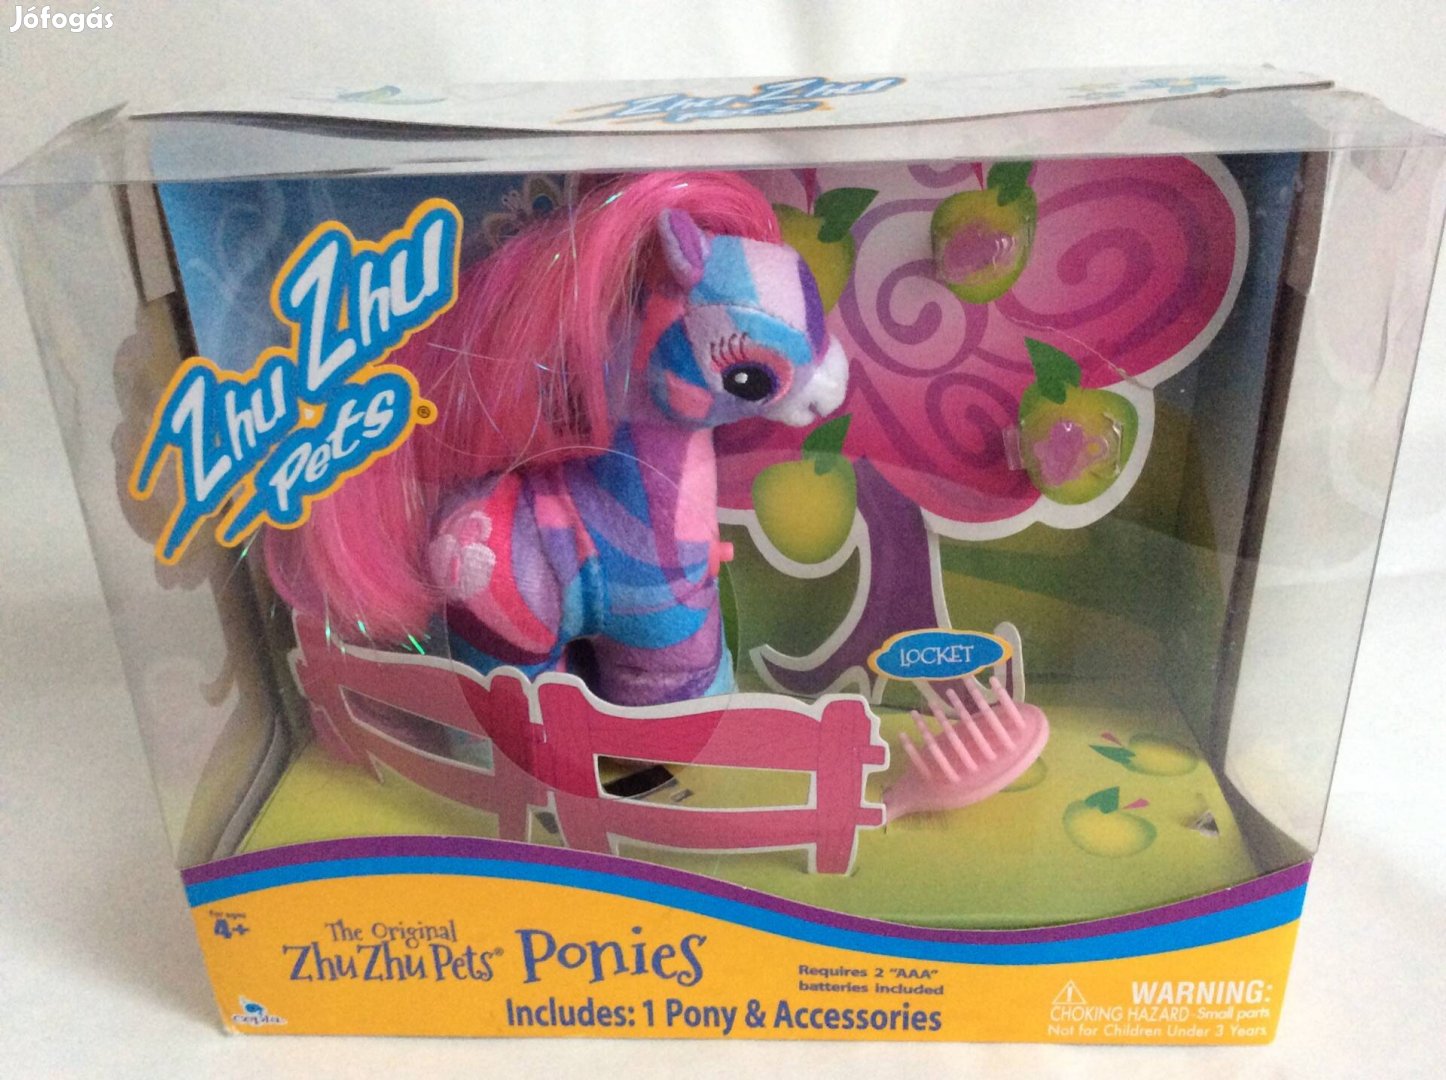 Zhu Zhu Pets póni, pony játék